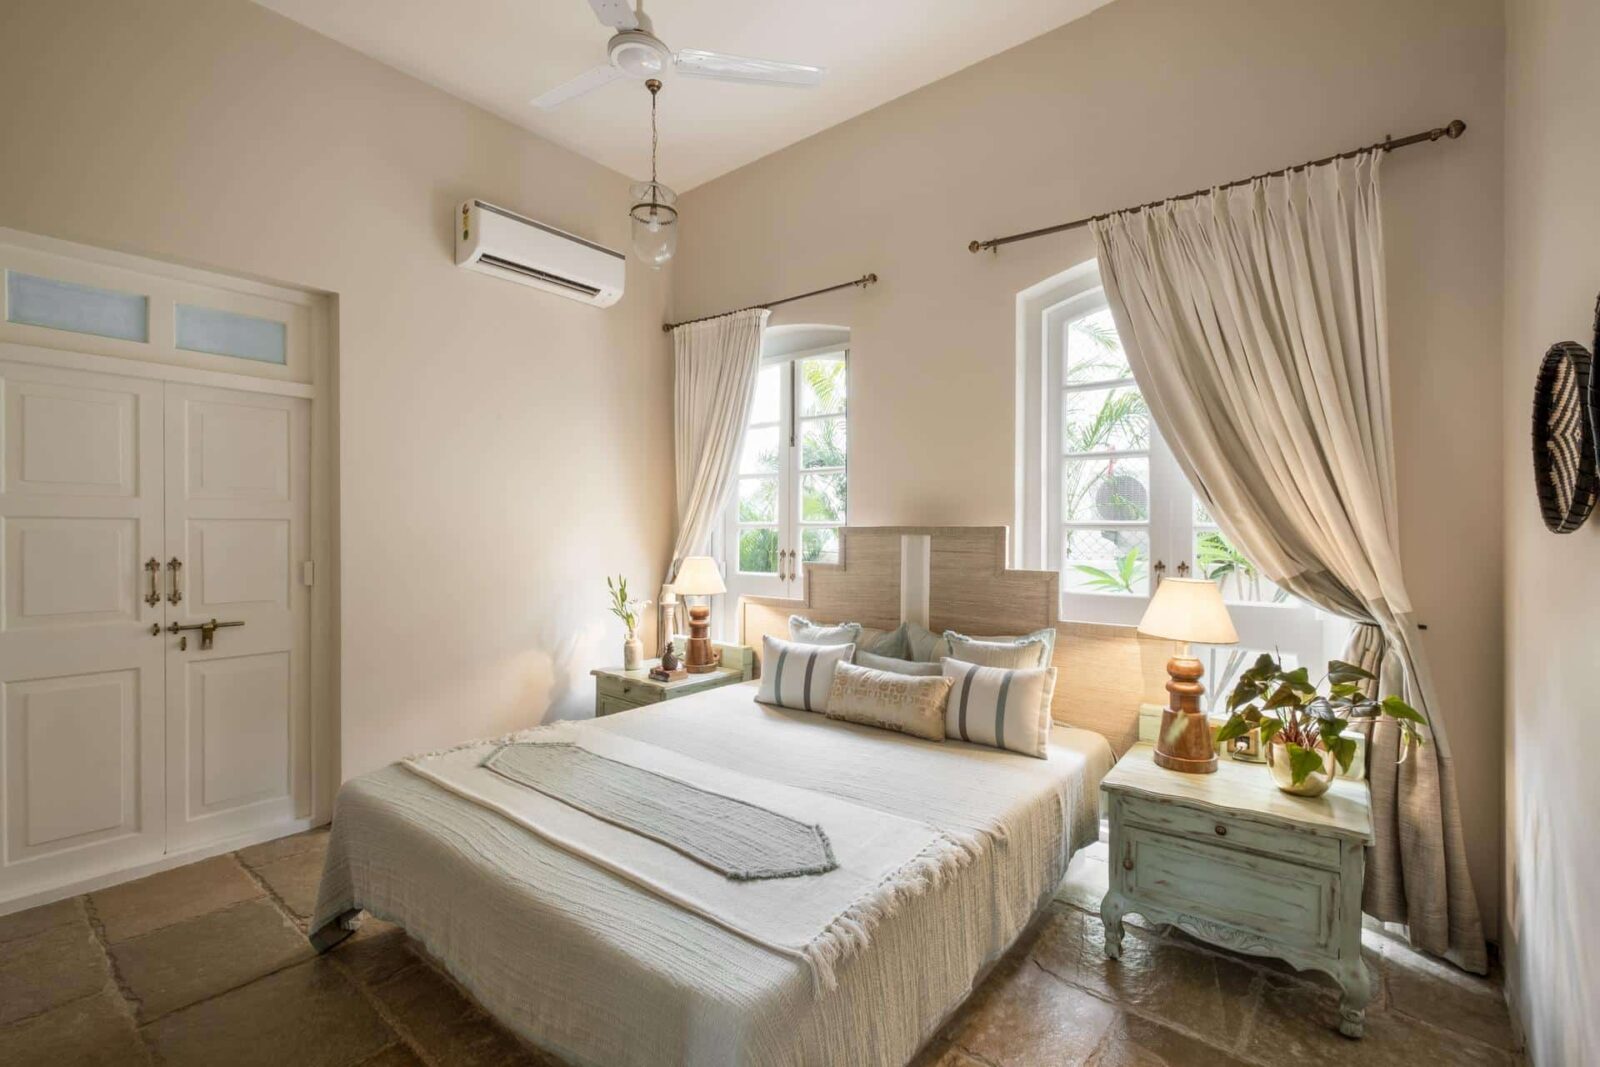 Silvio D - Villas for Sale in Goa - Bedroom View